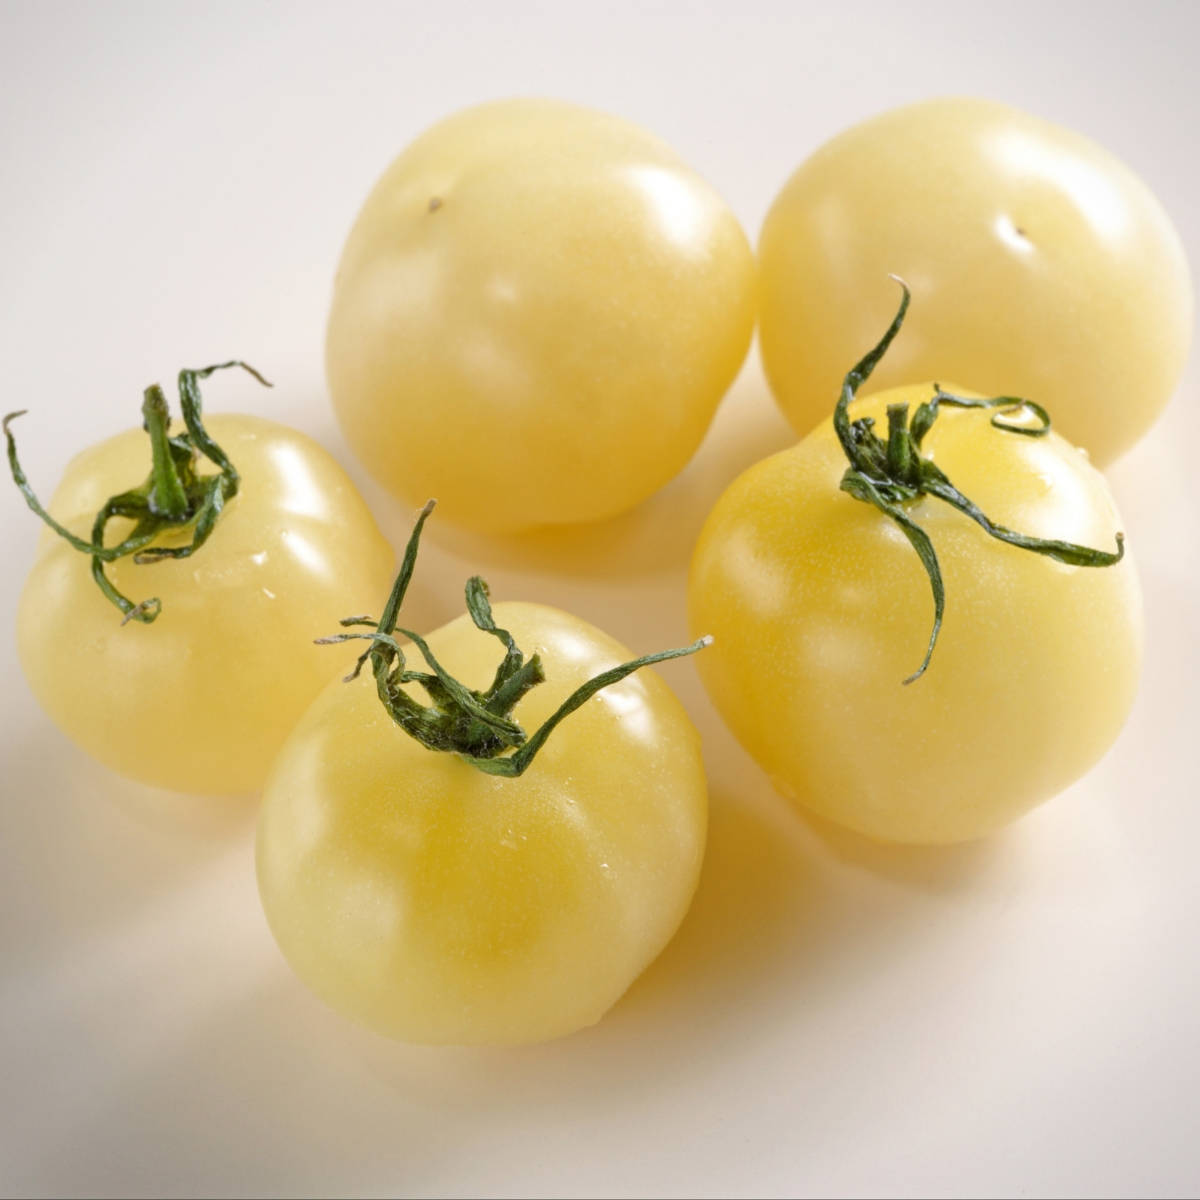 Russian Heirloom Vegetable-Rare 15 Tomato Seeds WHITE CHERRY- Belaya Vishnya